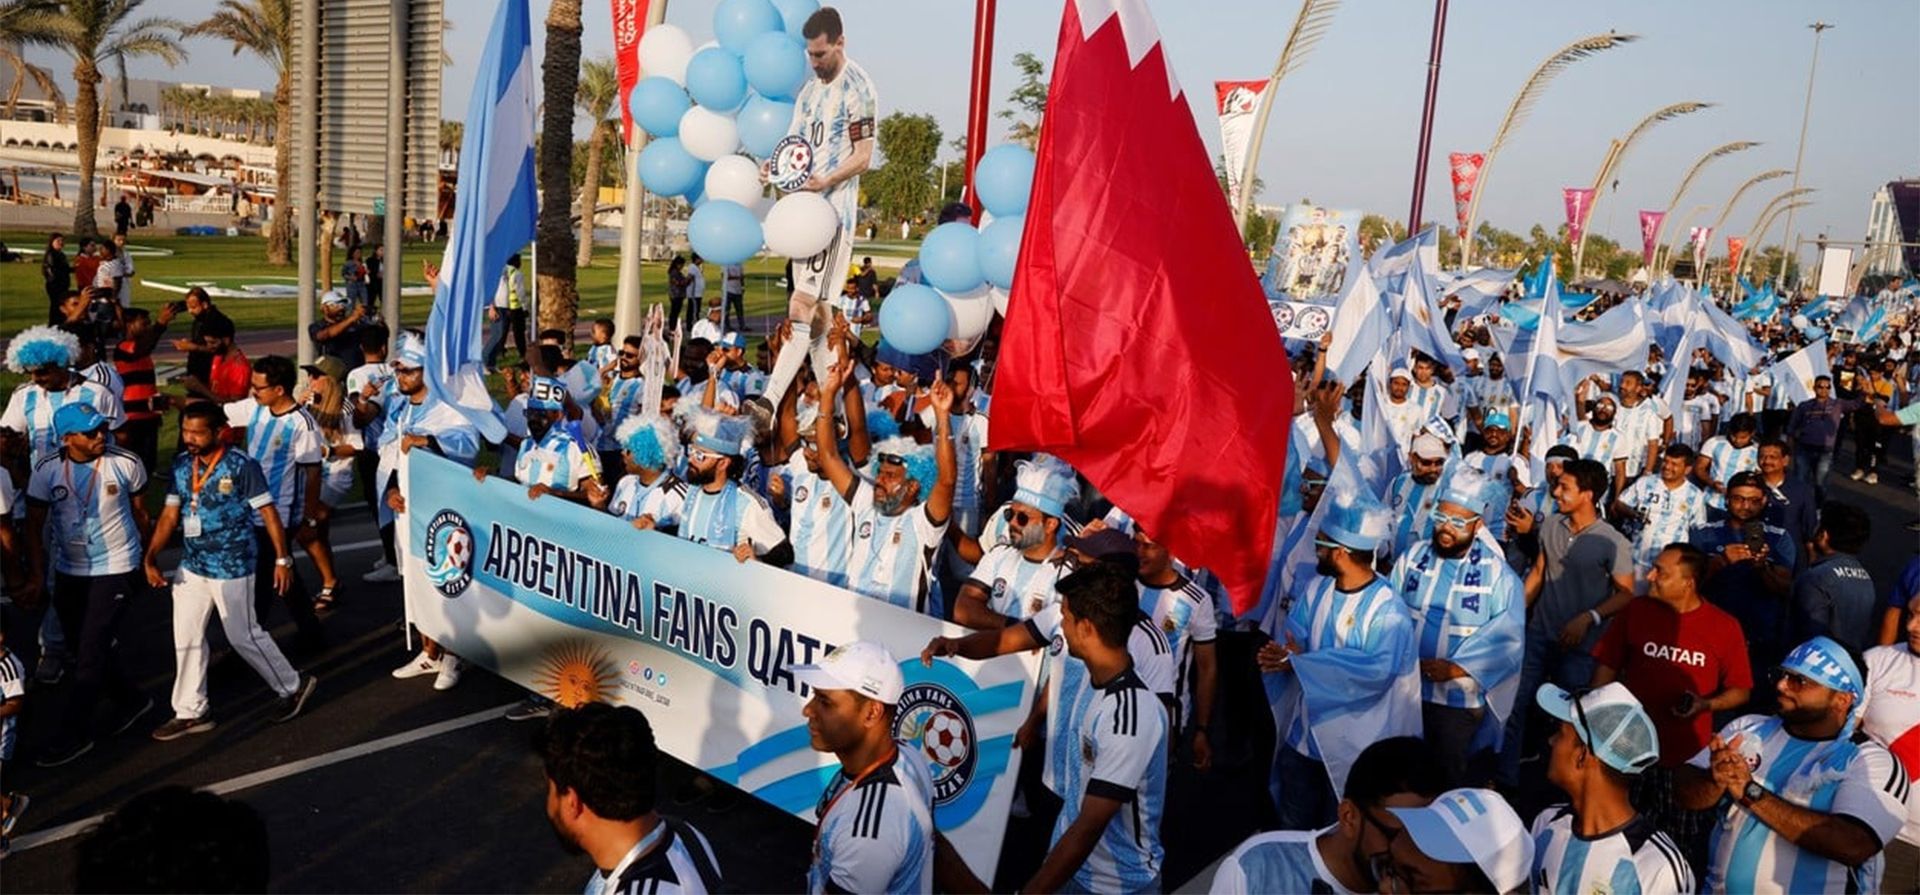 Fanáticos de Argentina, Messi y Maradona, provenientes de distintas partes del mundo marchan por Doha para alentar a la Selección. Foto: Clock REUTERS/John Sibley.